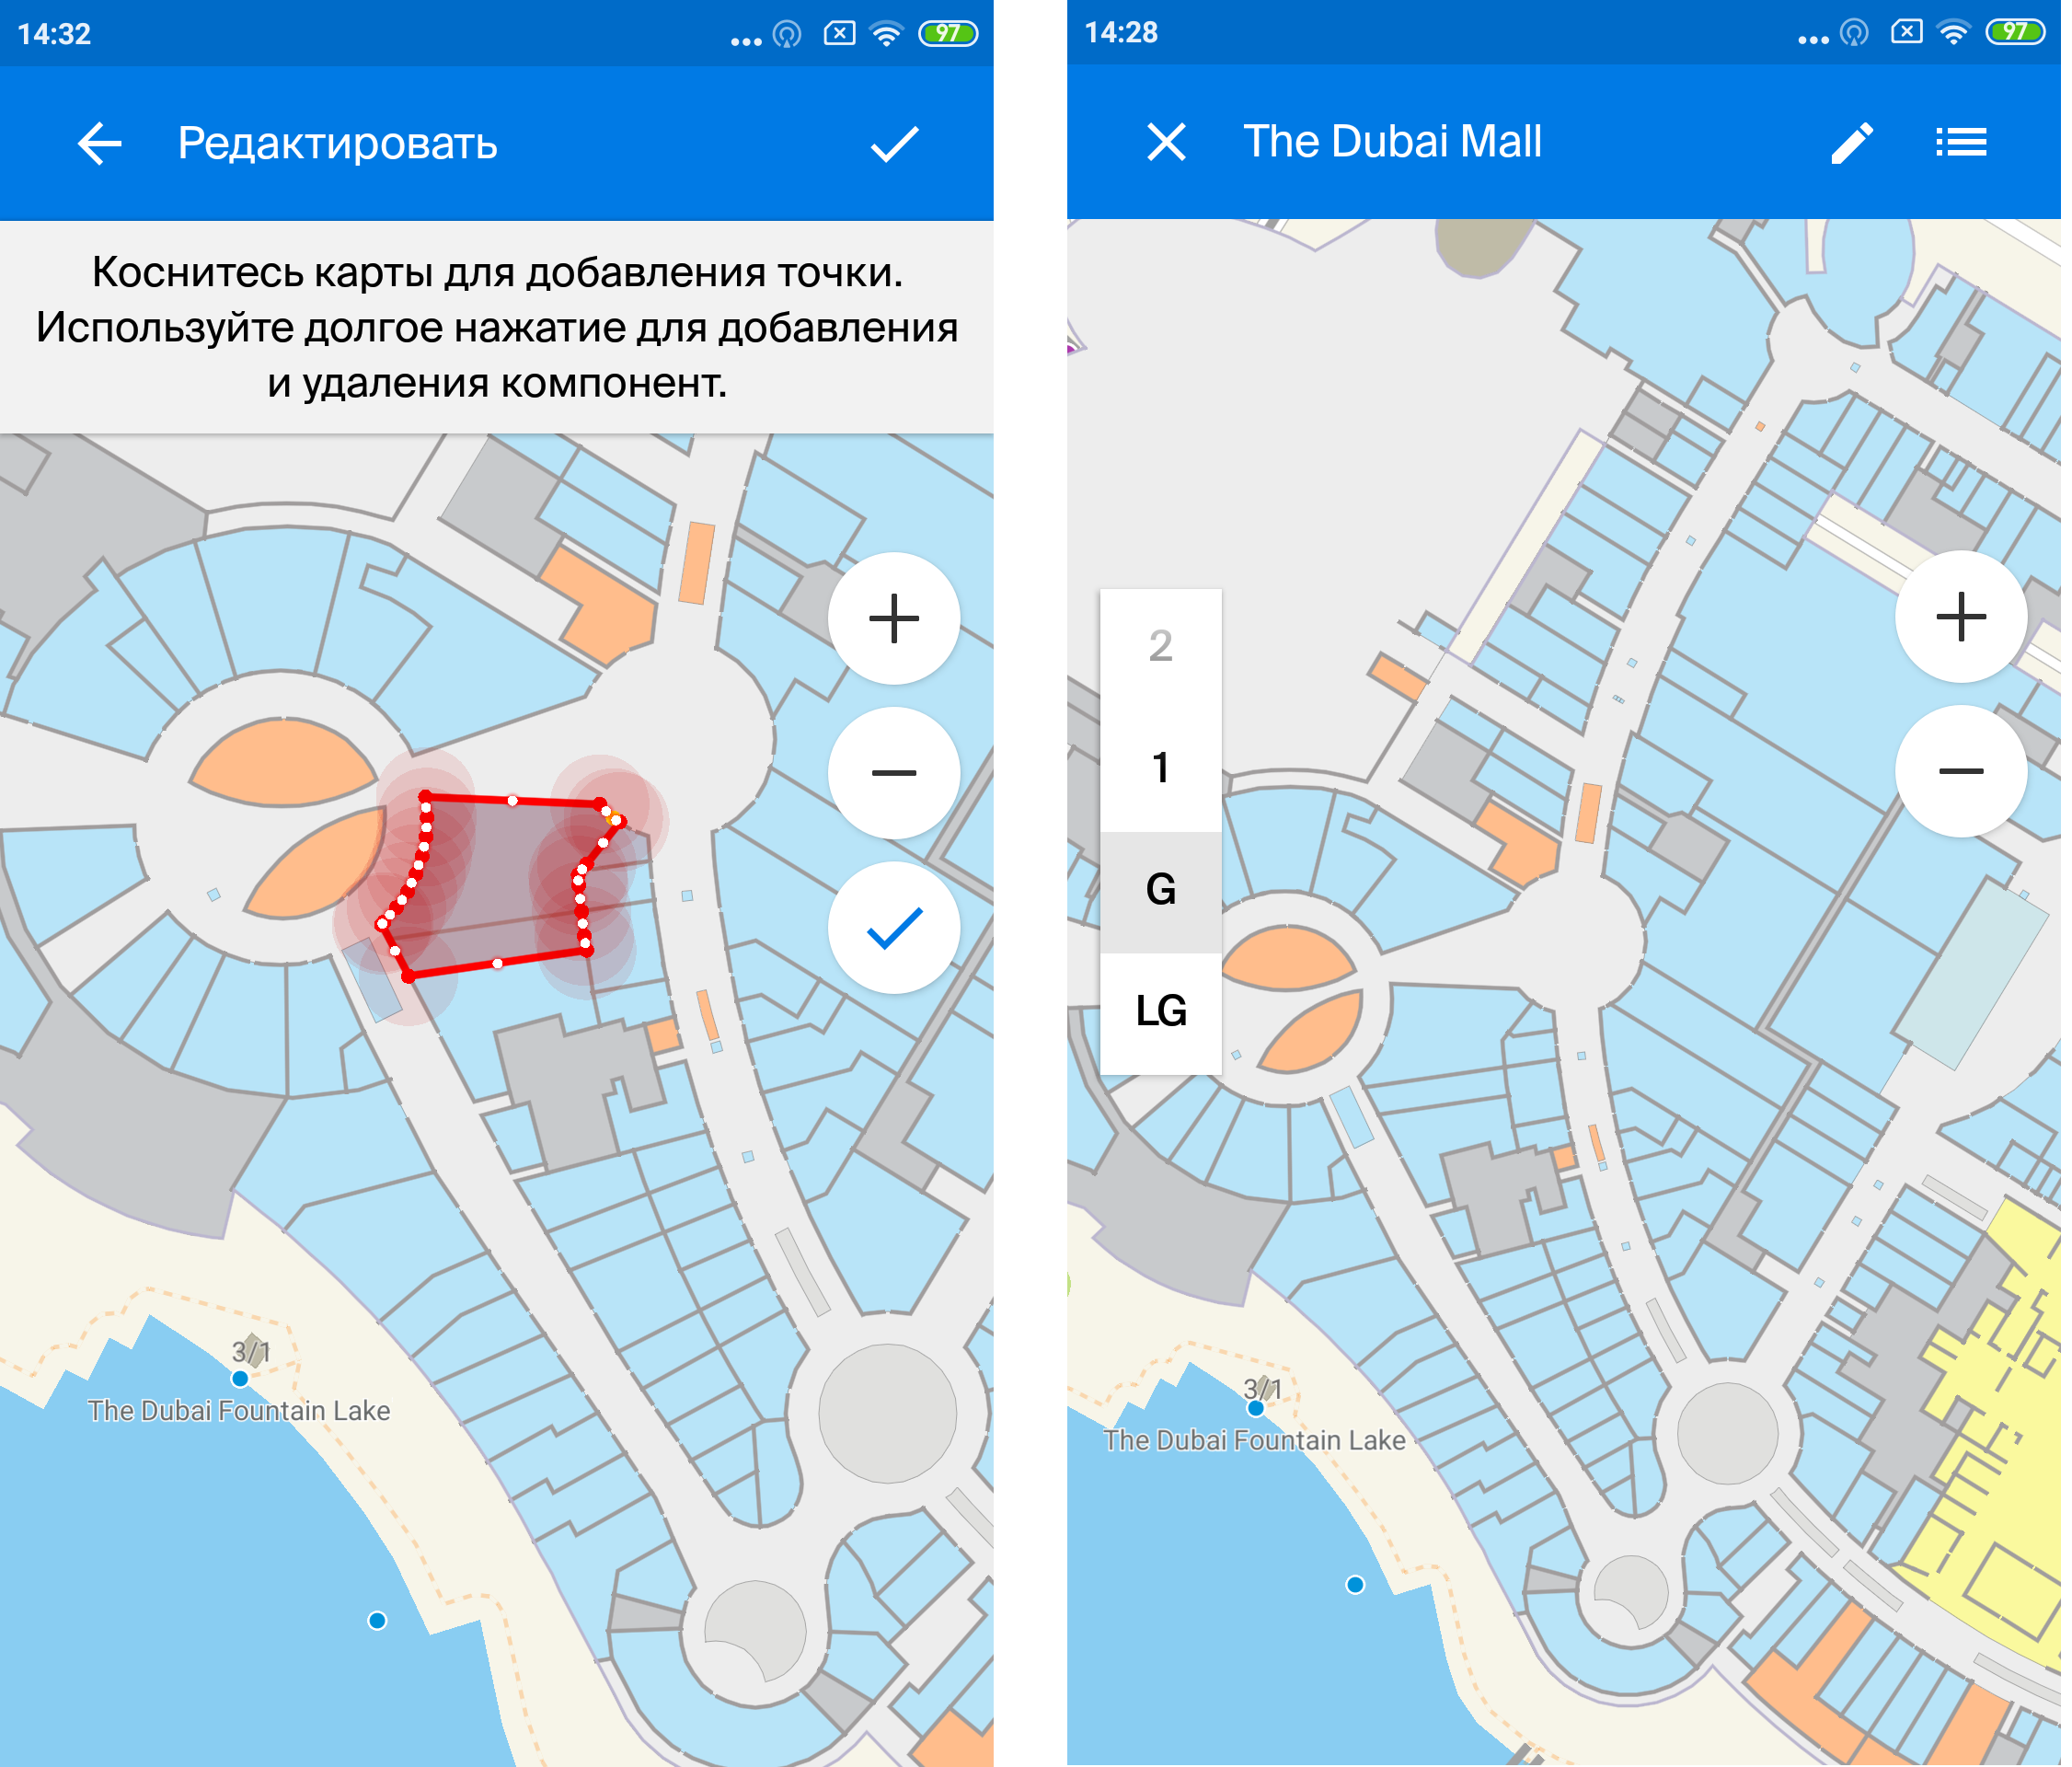 Дубай Молл в смартфоне, или как добавить поэтажный план здания в своё приложение - 5